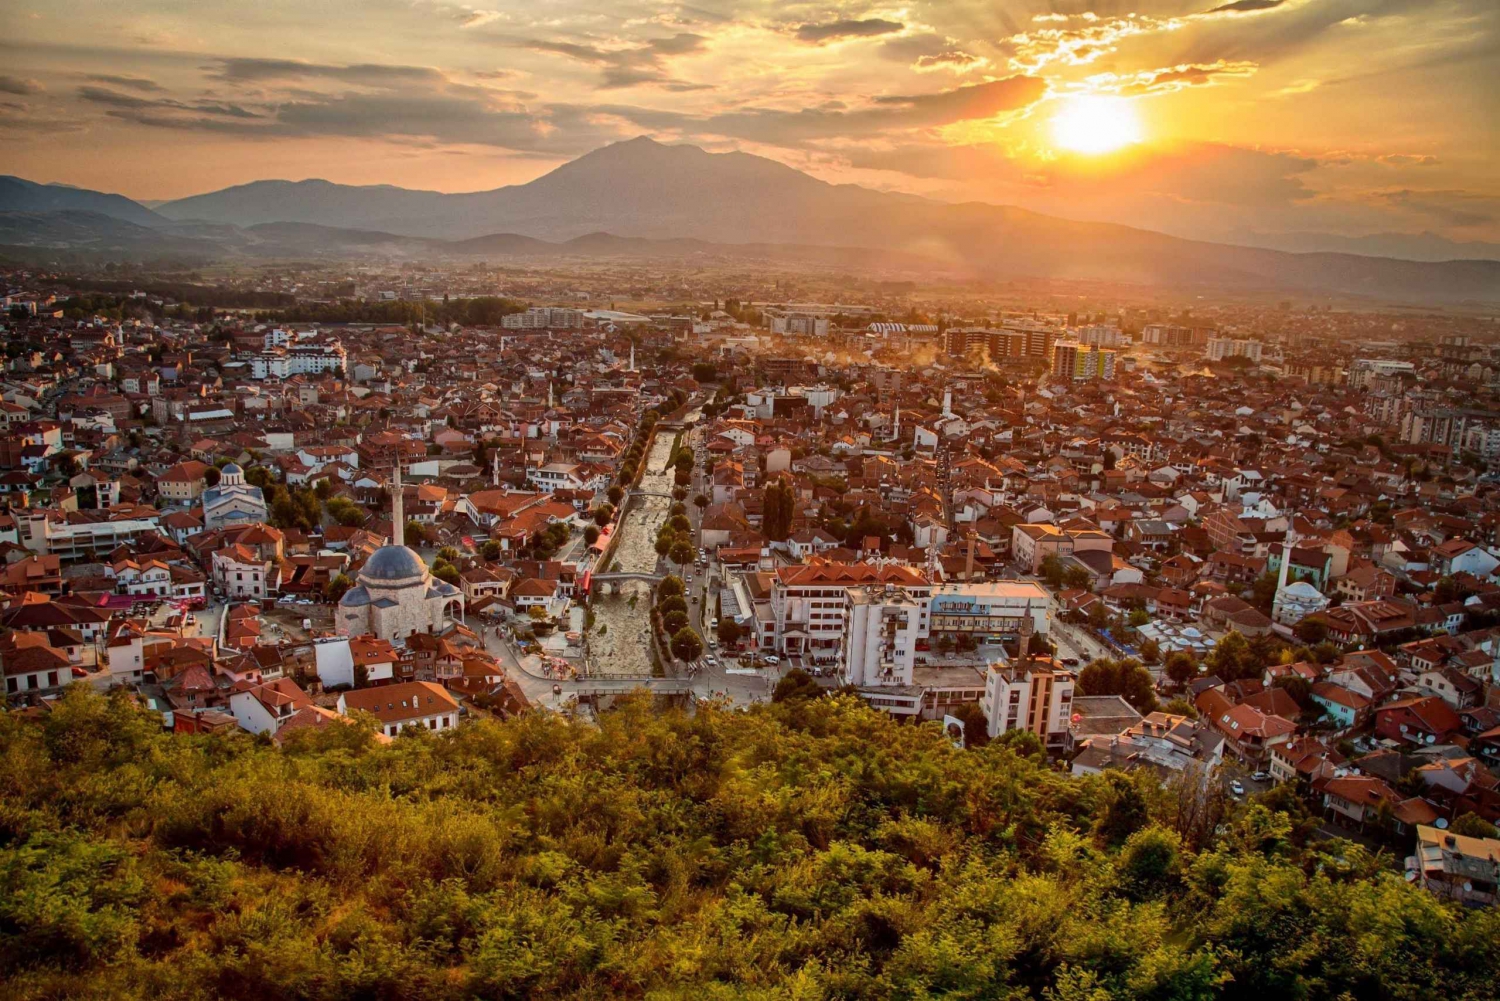 Full Day Tour of Prisitna & Prizren from Skopje